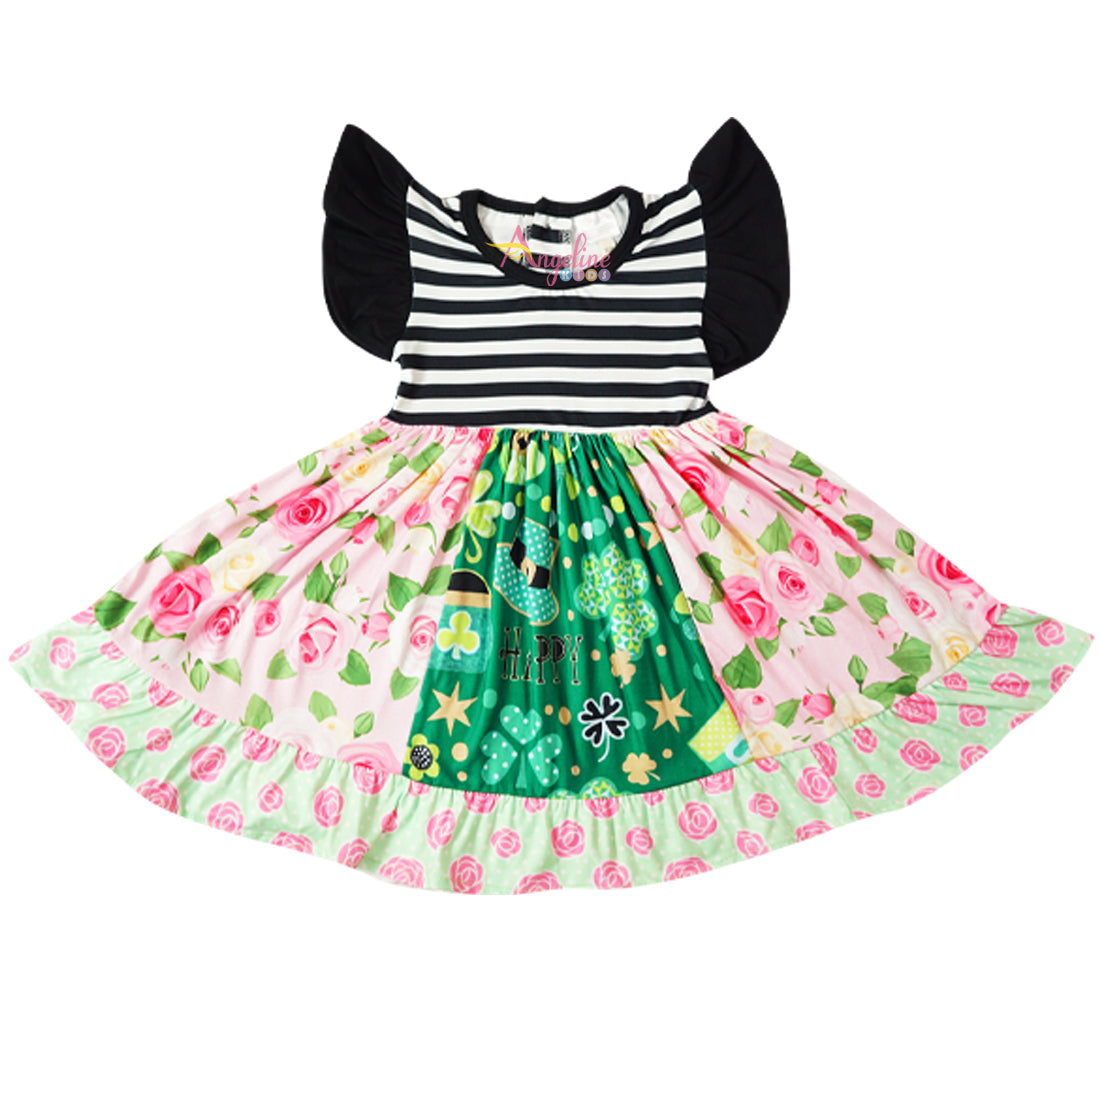 Baby Toddler Little Girl St. Patricks Day Twirl Dress Leggings Set - Black Stripes - Angeline Kids